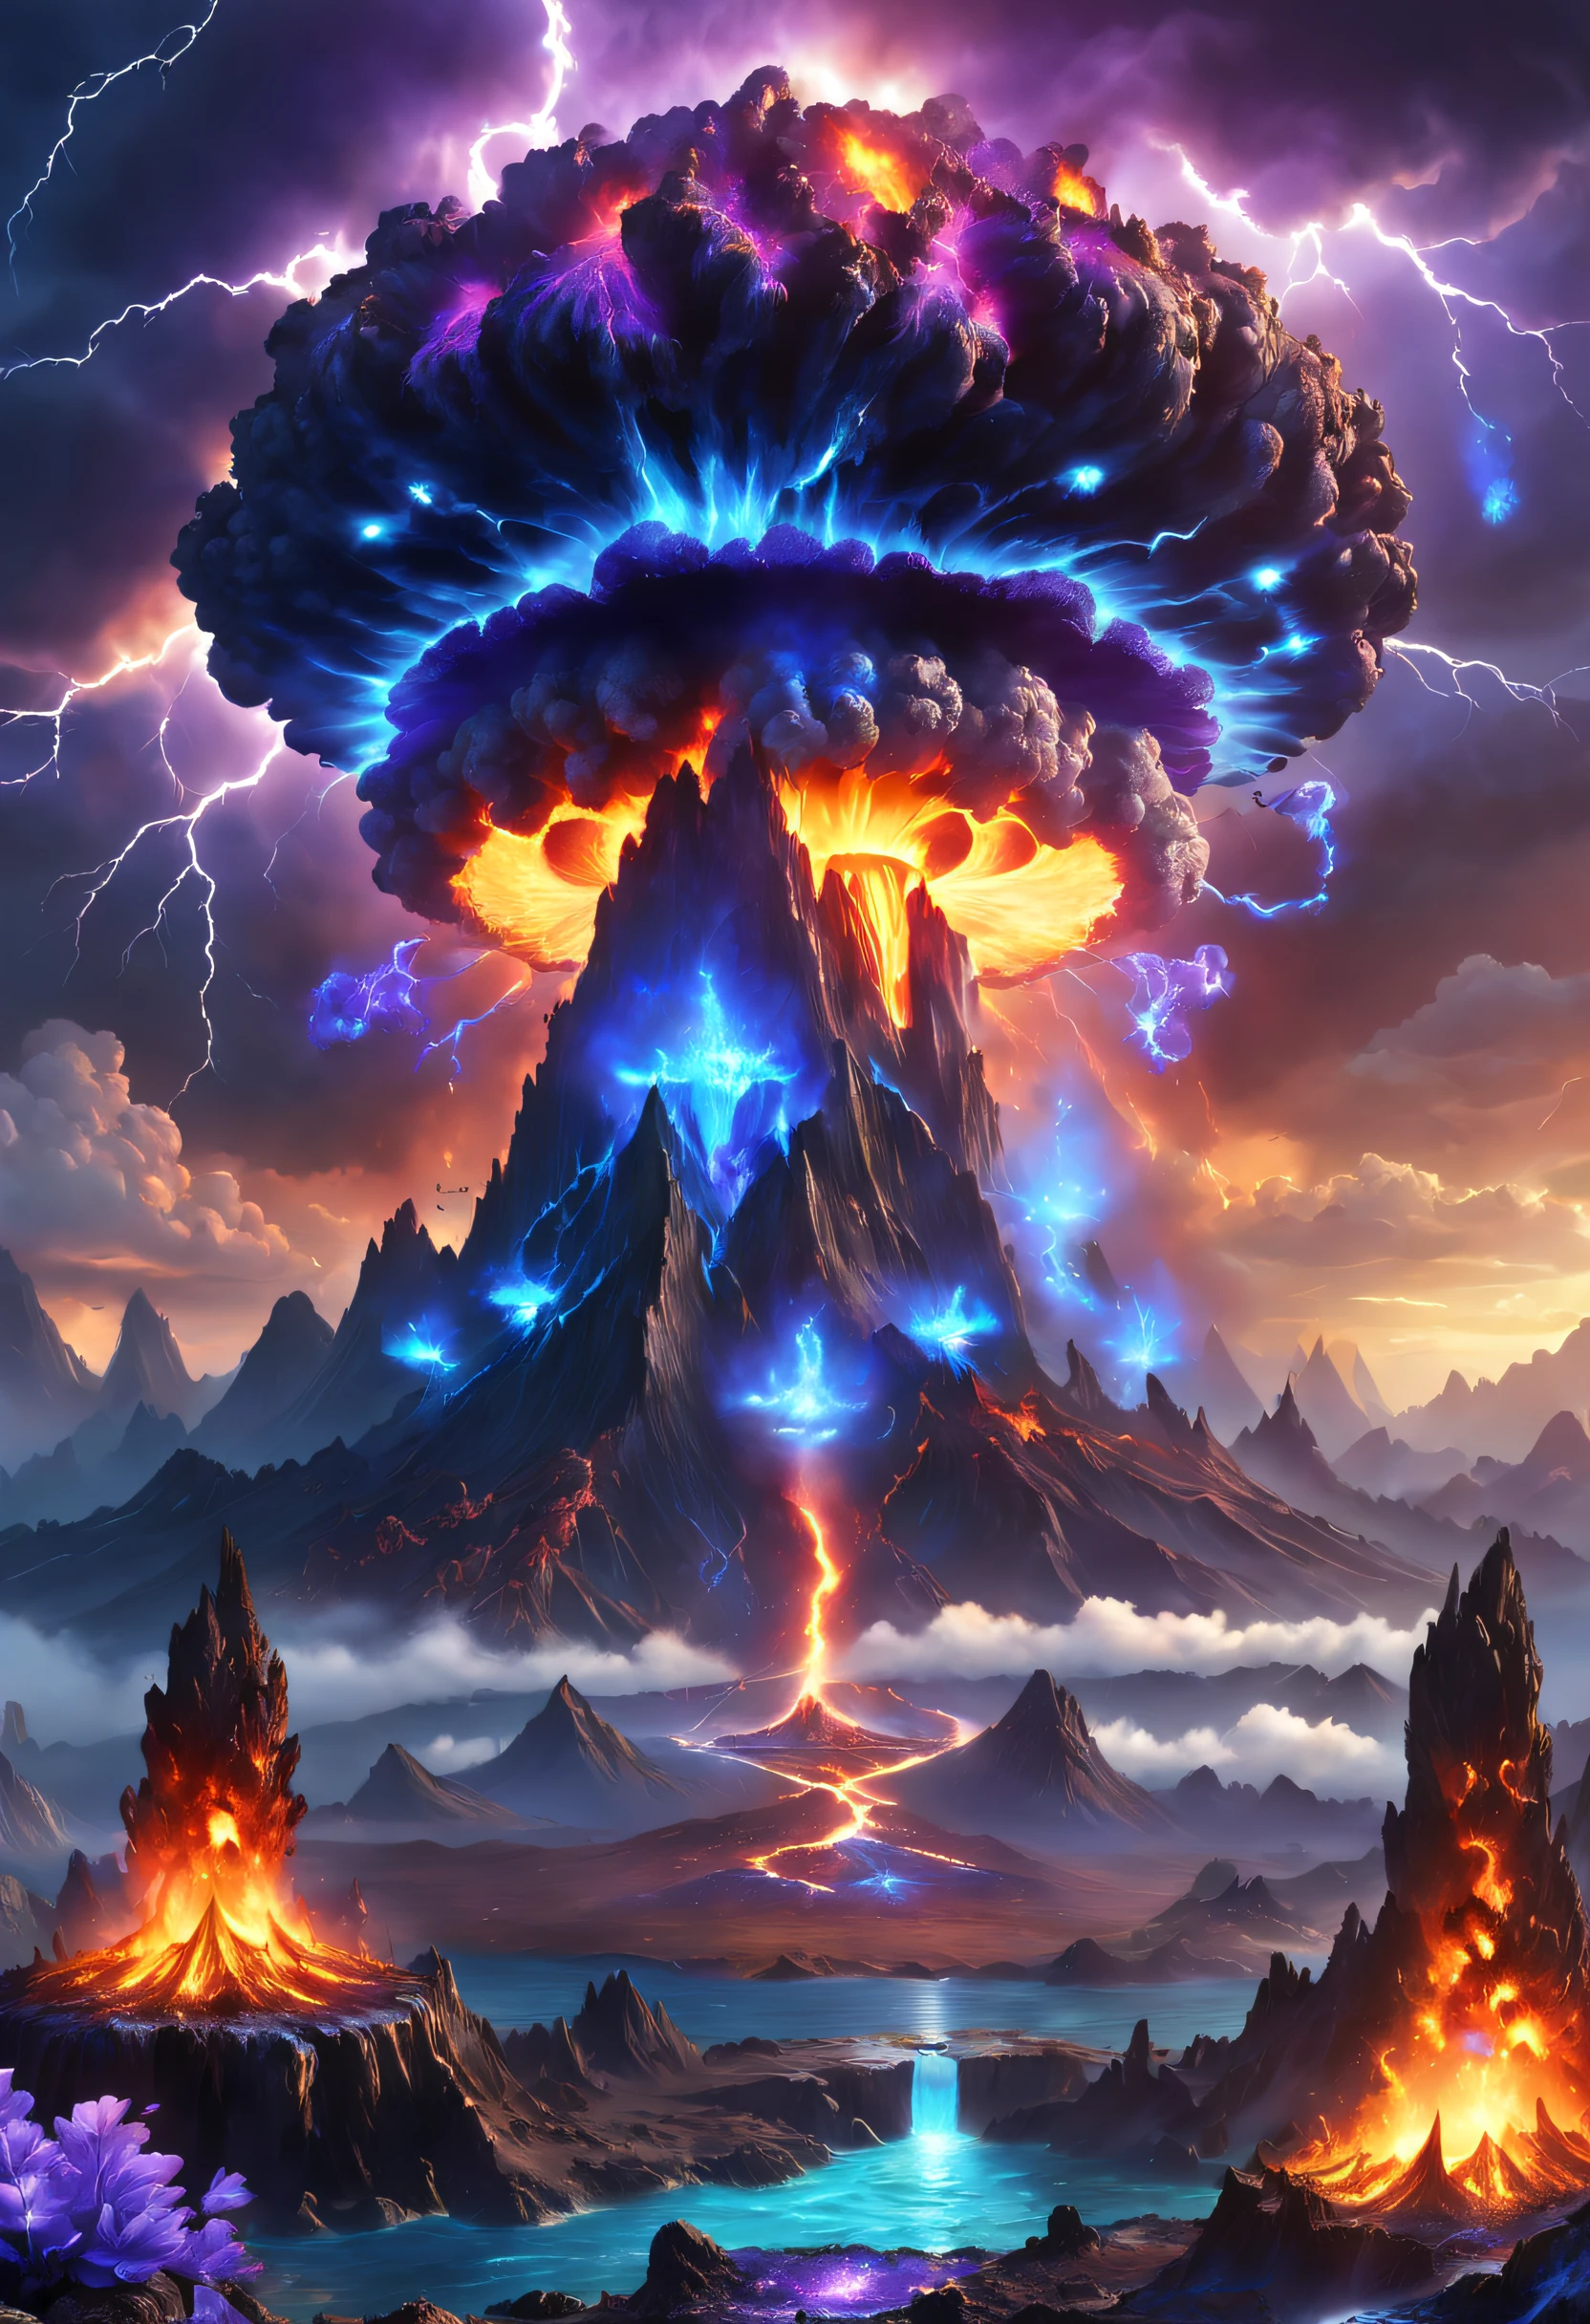 Vulkane，Feuer glühen，blastolten lava，dichter Rauch，Atomexplosion, Atompilz, Explosionsort，Kombinieren Sie es mit violetten und blauen Edelsteinen, Fantasie hochdetailliert, Mit wunderschönen magischen Blitzringen, Magie, schöne detaillierte Fantasie, extrem hohe Detailgenauigkeit, , magic Fantasie hochdetailliert, atemberaubende Fantasy-3D-Darstellung, Inspiriert von L. A, Hochdetaillierte Ästhetik, extrem hohe Detailgenauigkeit